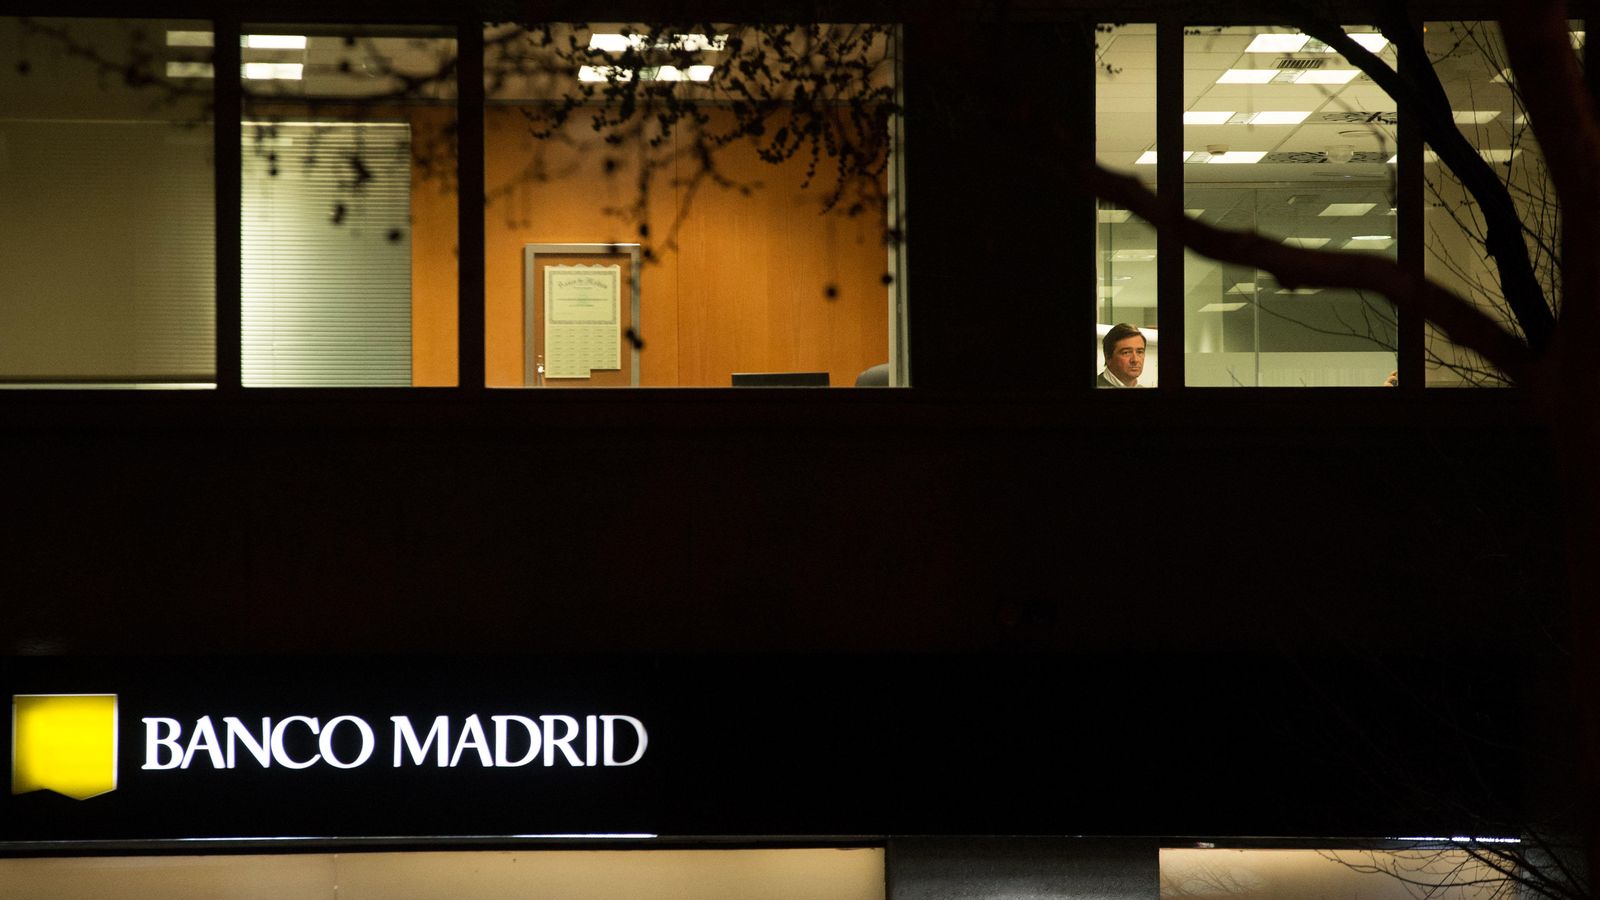 Foto: Sede de Banco Madrid. (Pablo López Learte)